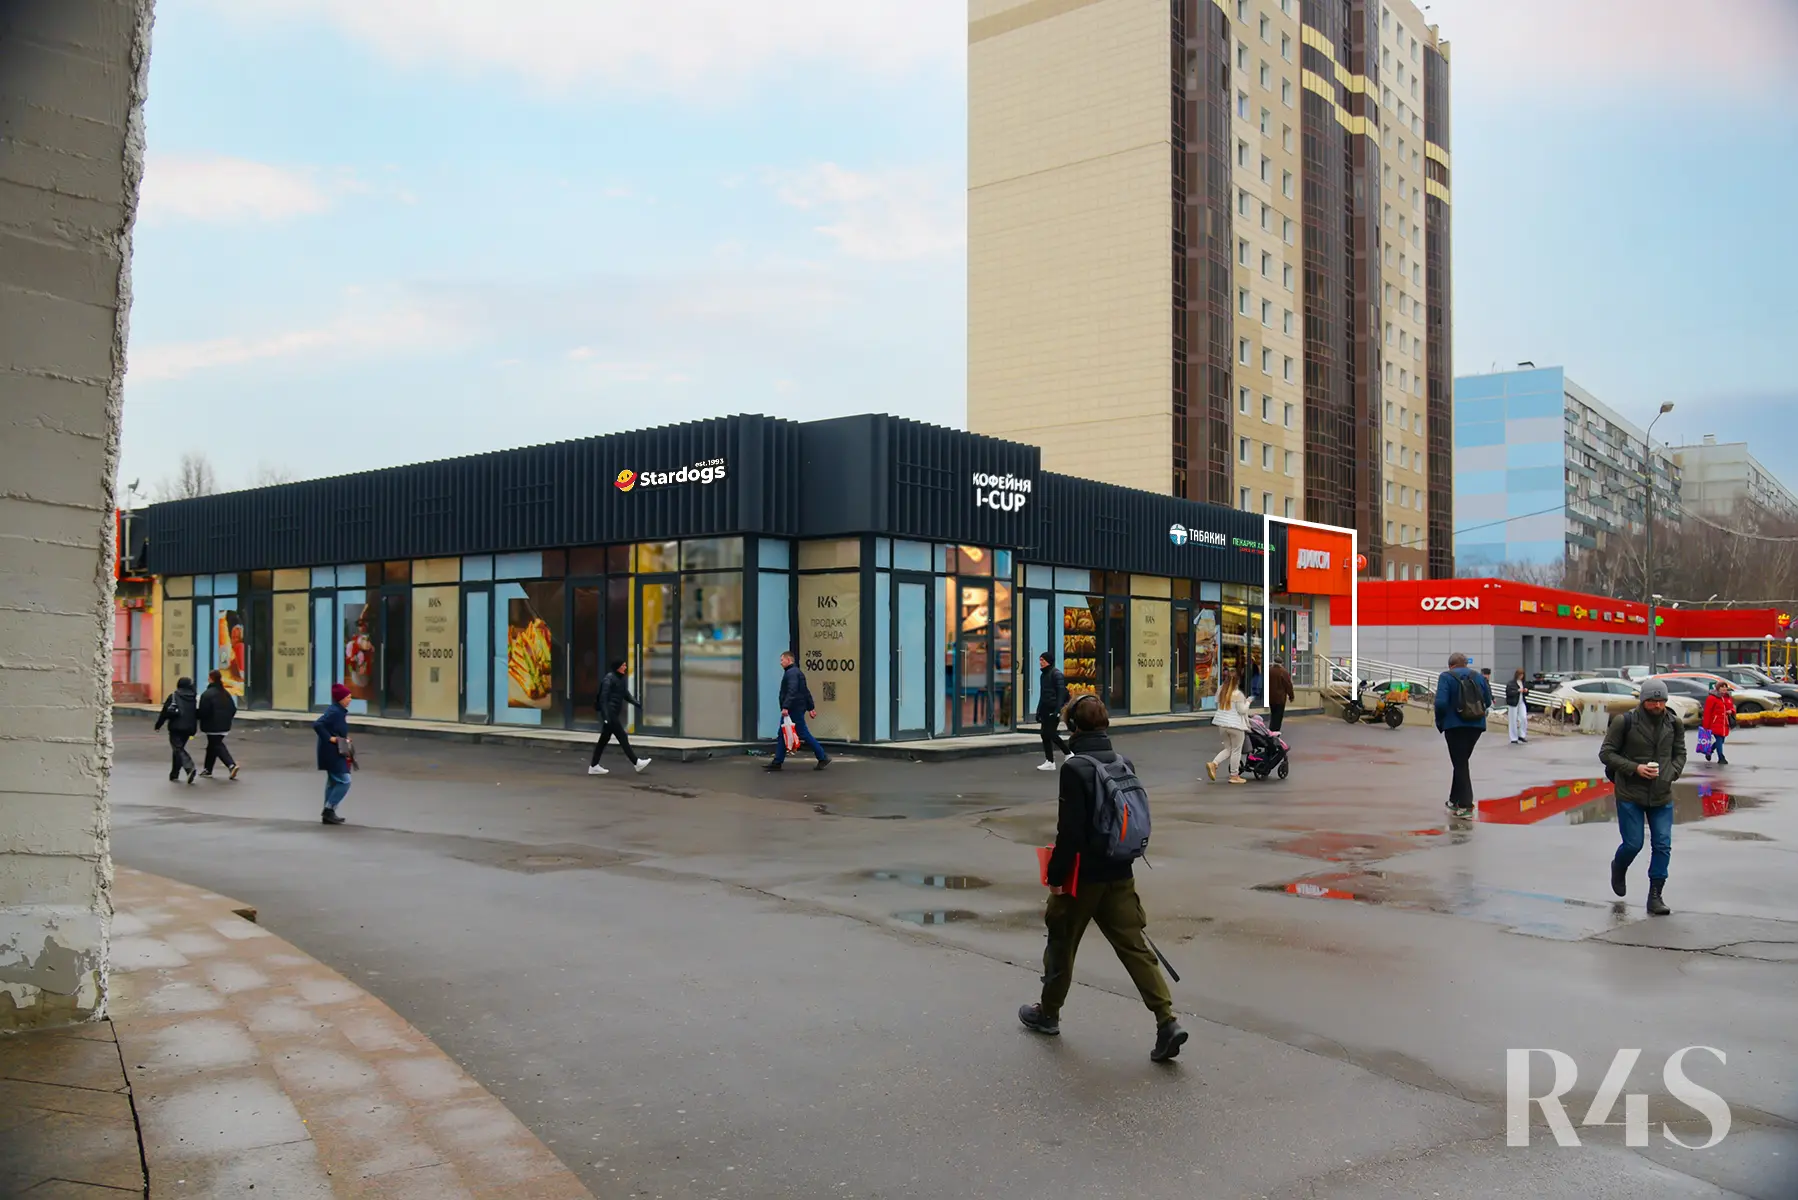 Продажа готового арендного бизнеса площадью 459.5 м2 в Москве: Шипиловский проезд, 39к3 R4S | Realty4Sale